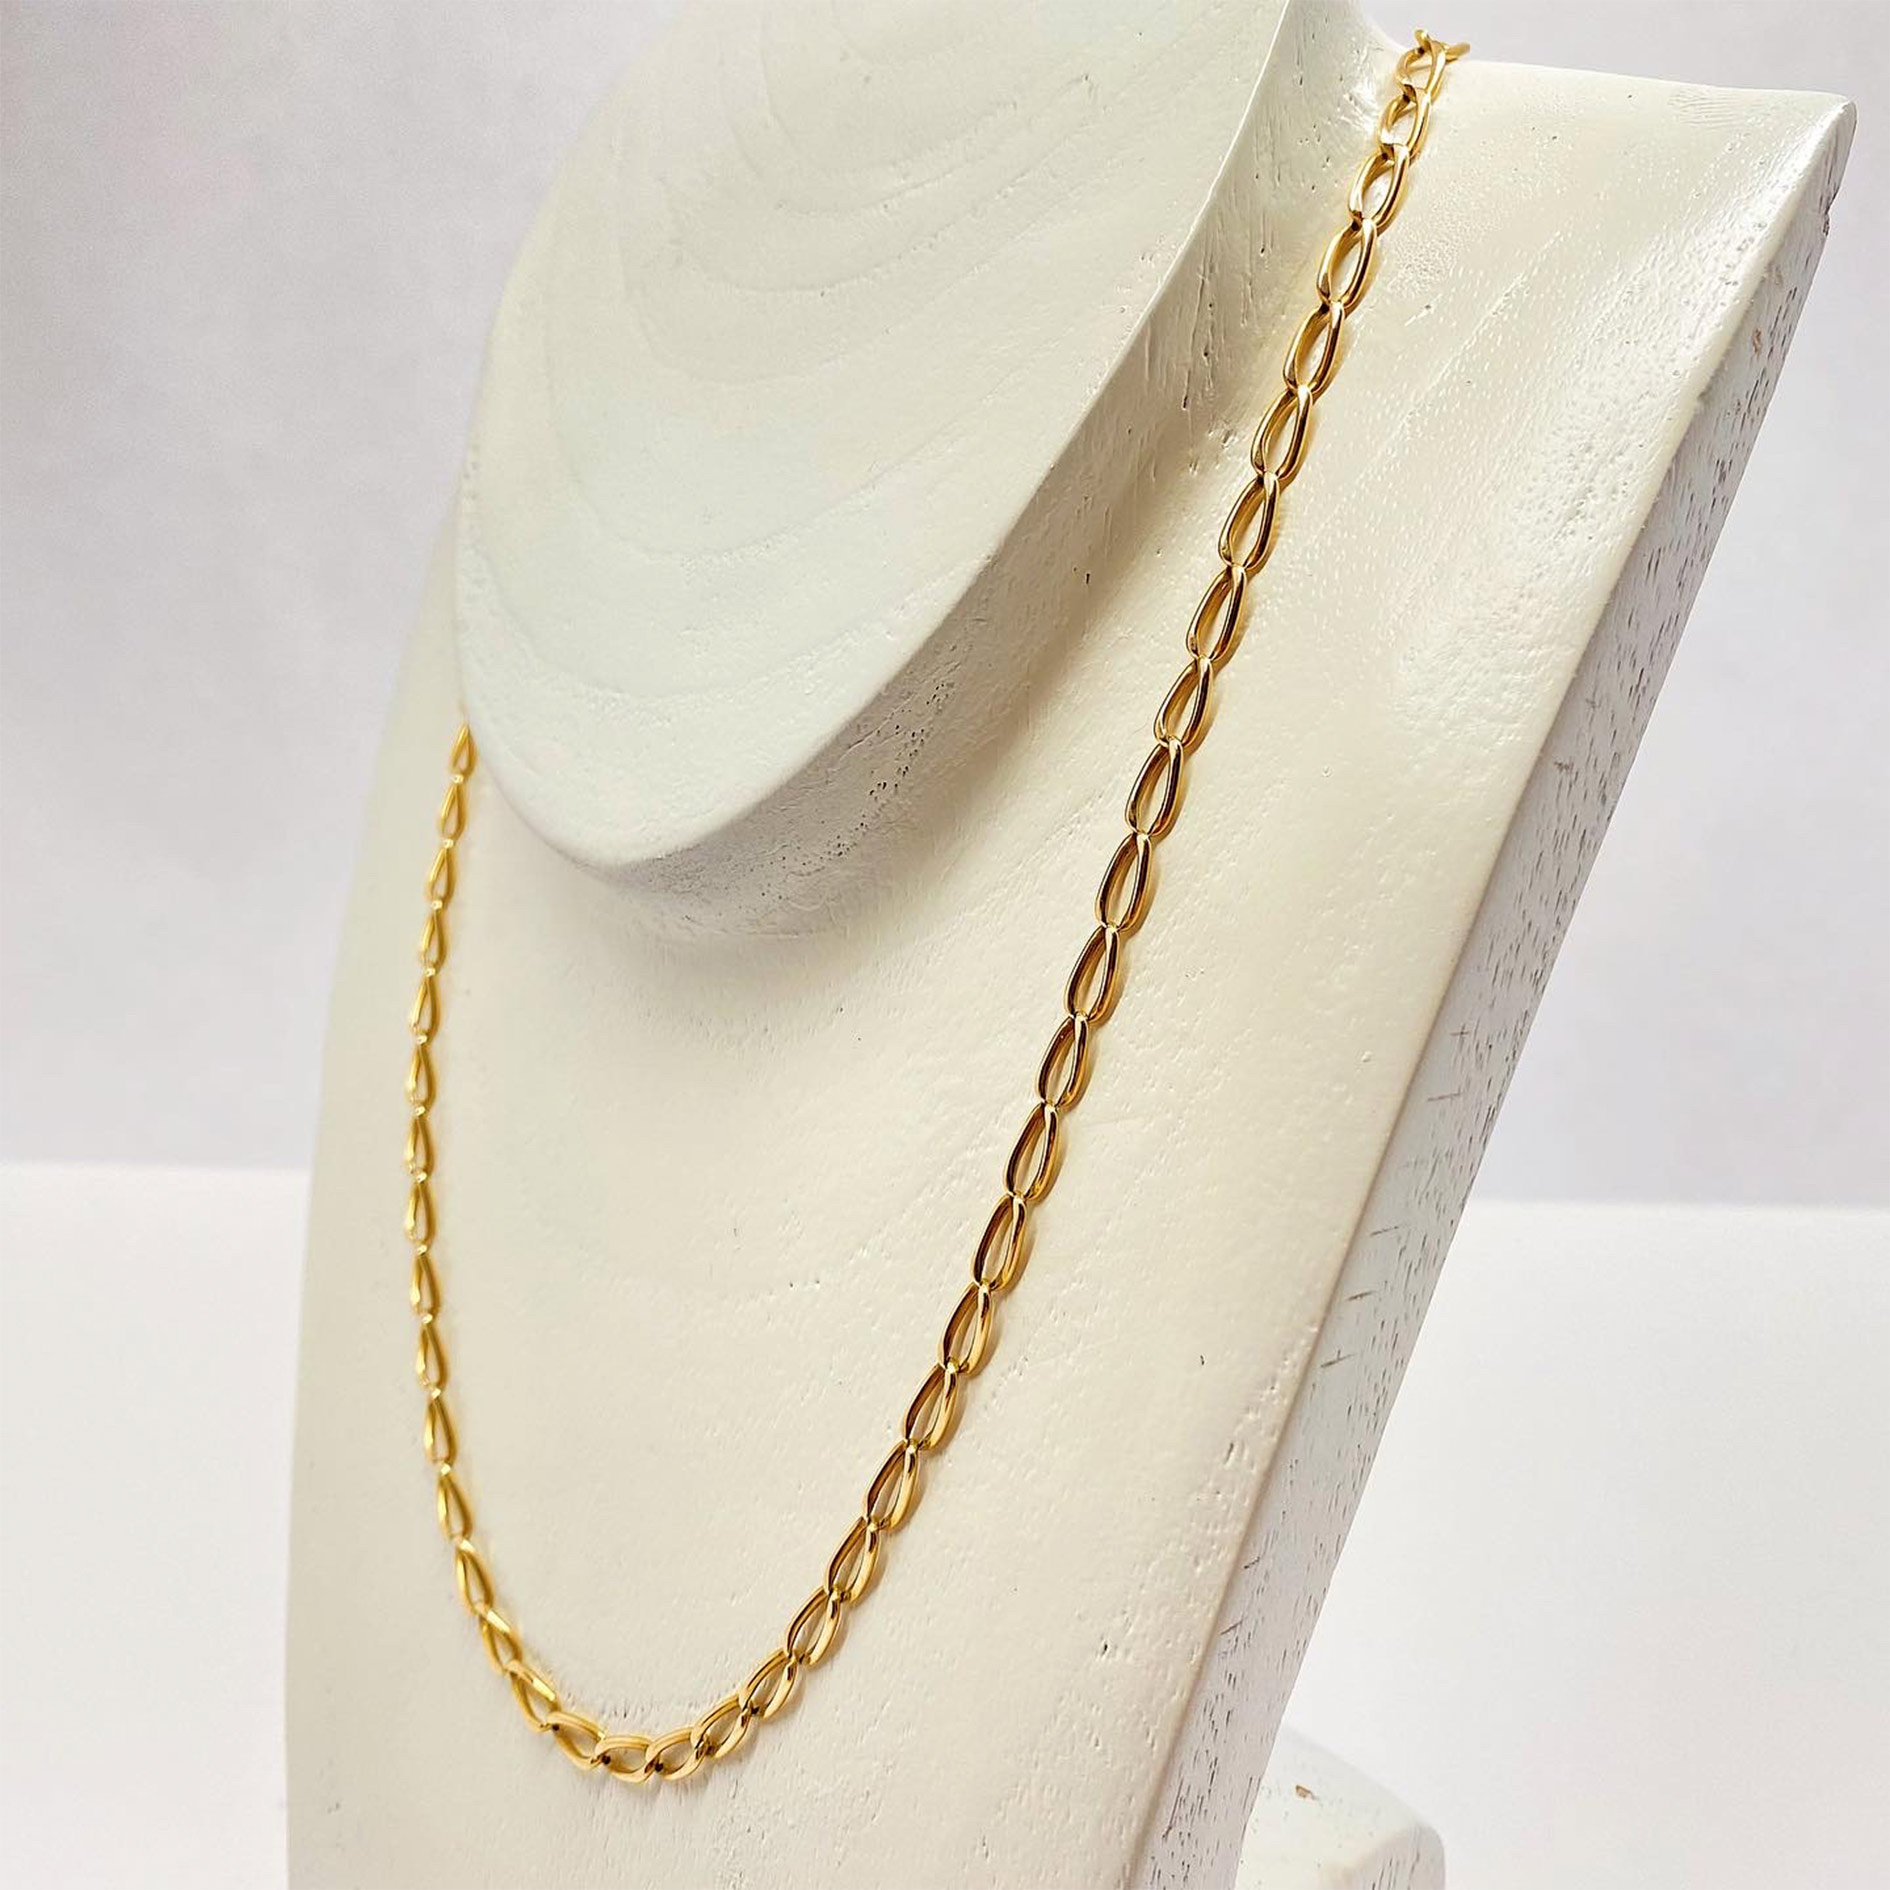 Imagem que demonstra um colar de ouro limpo com o metodo de limpeza de joias